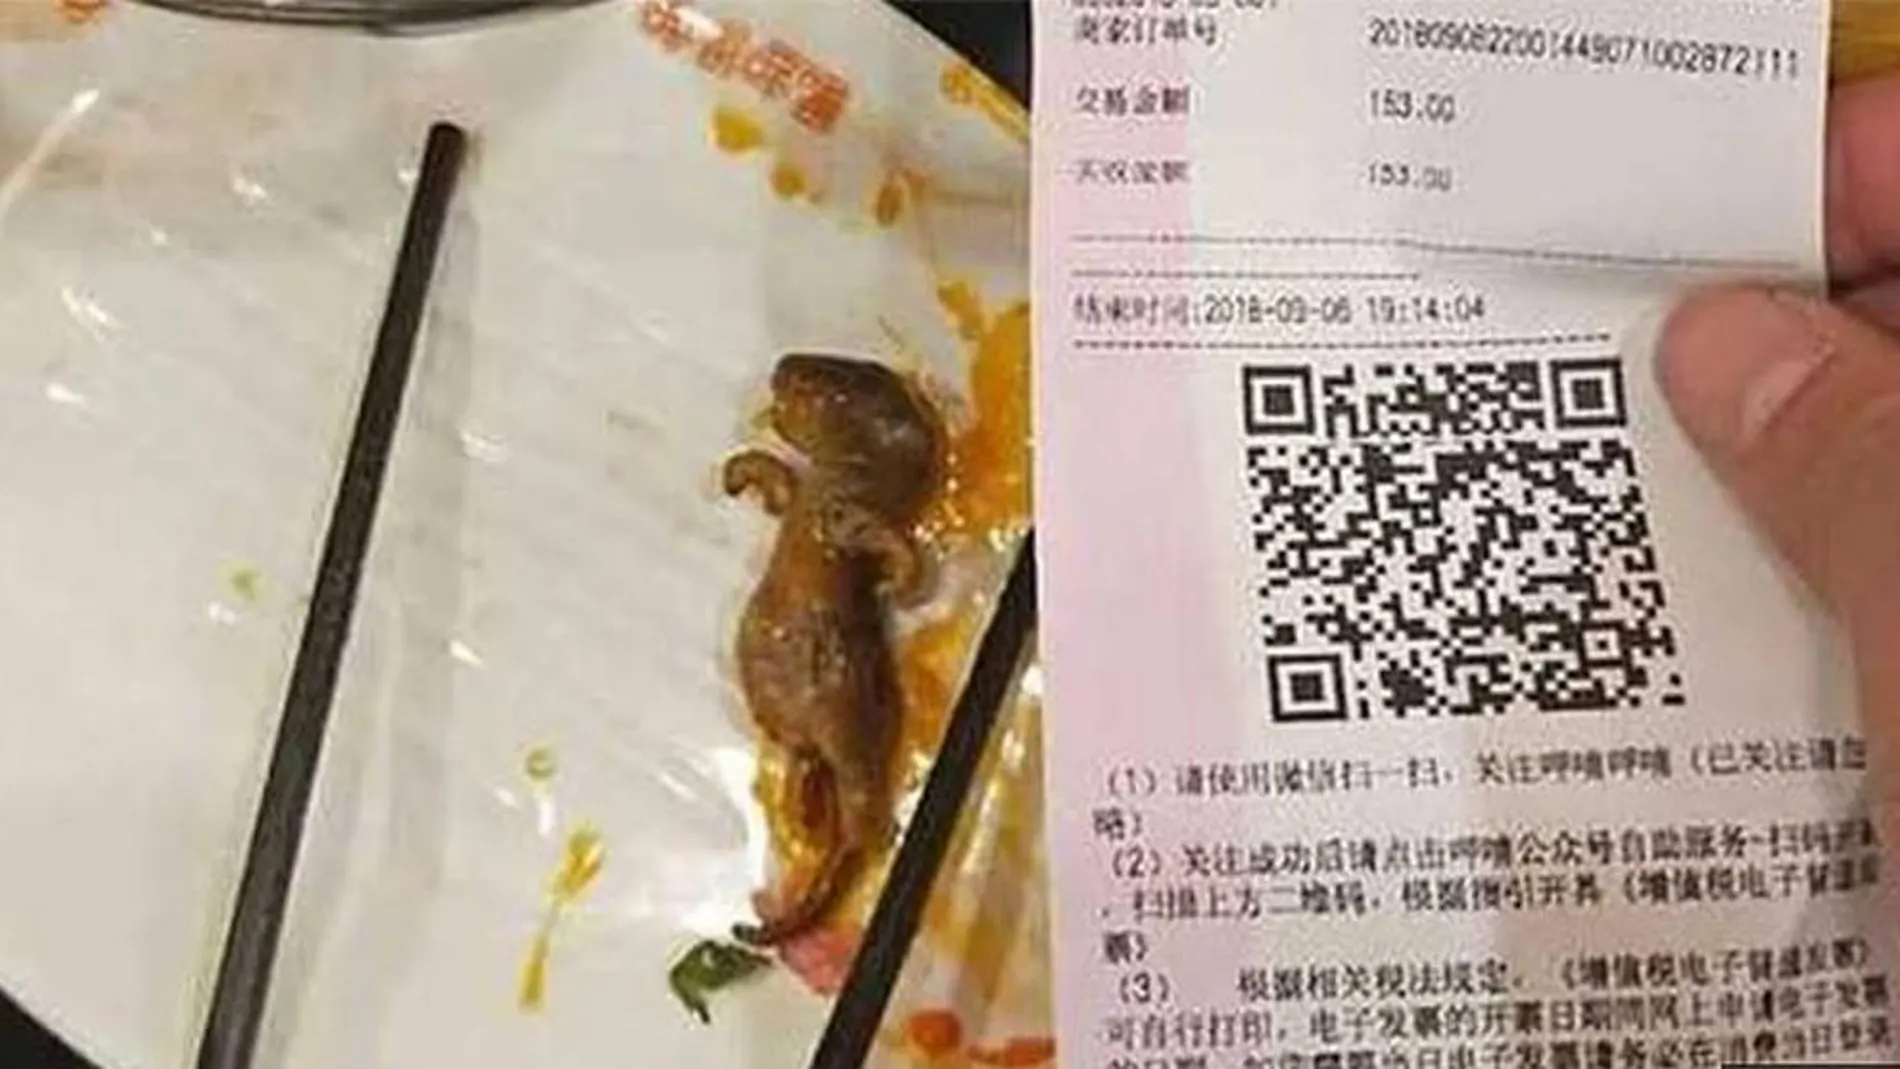 Imagen de la rata muerta encontrada en una sopa en un restaurante chino